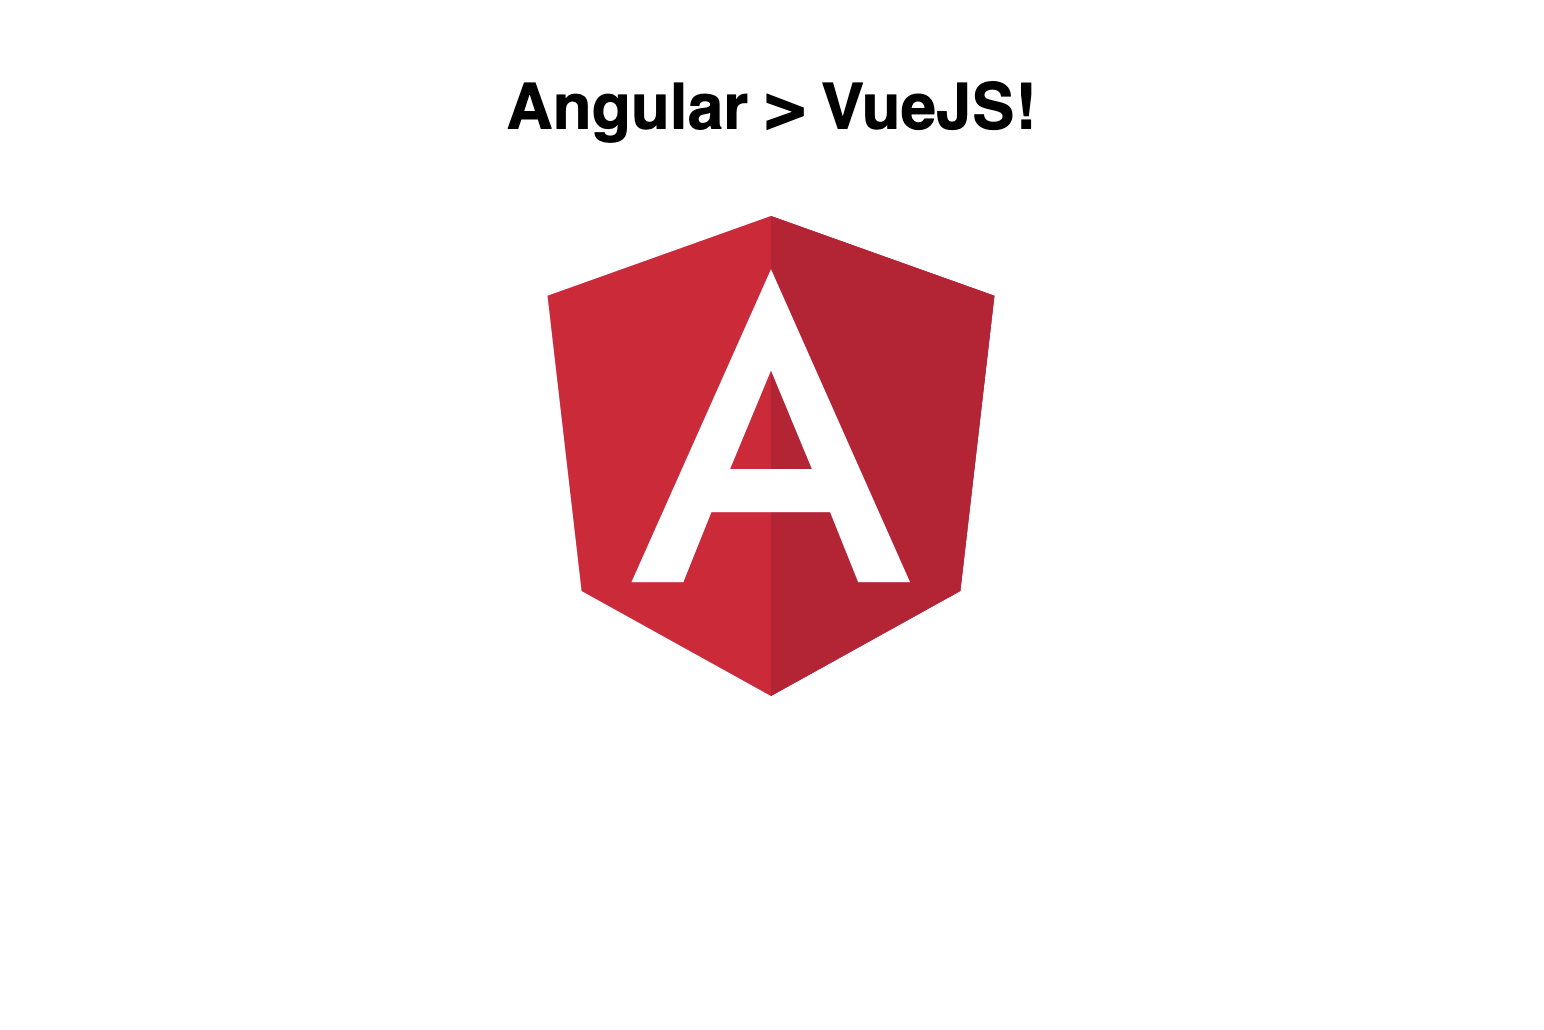 Building App in Angular vs Vue JS